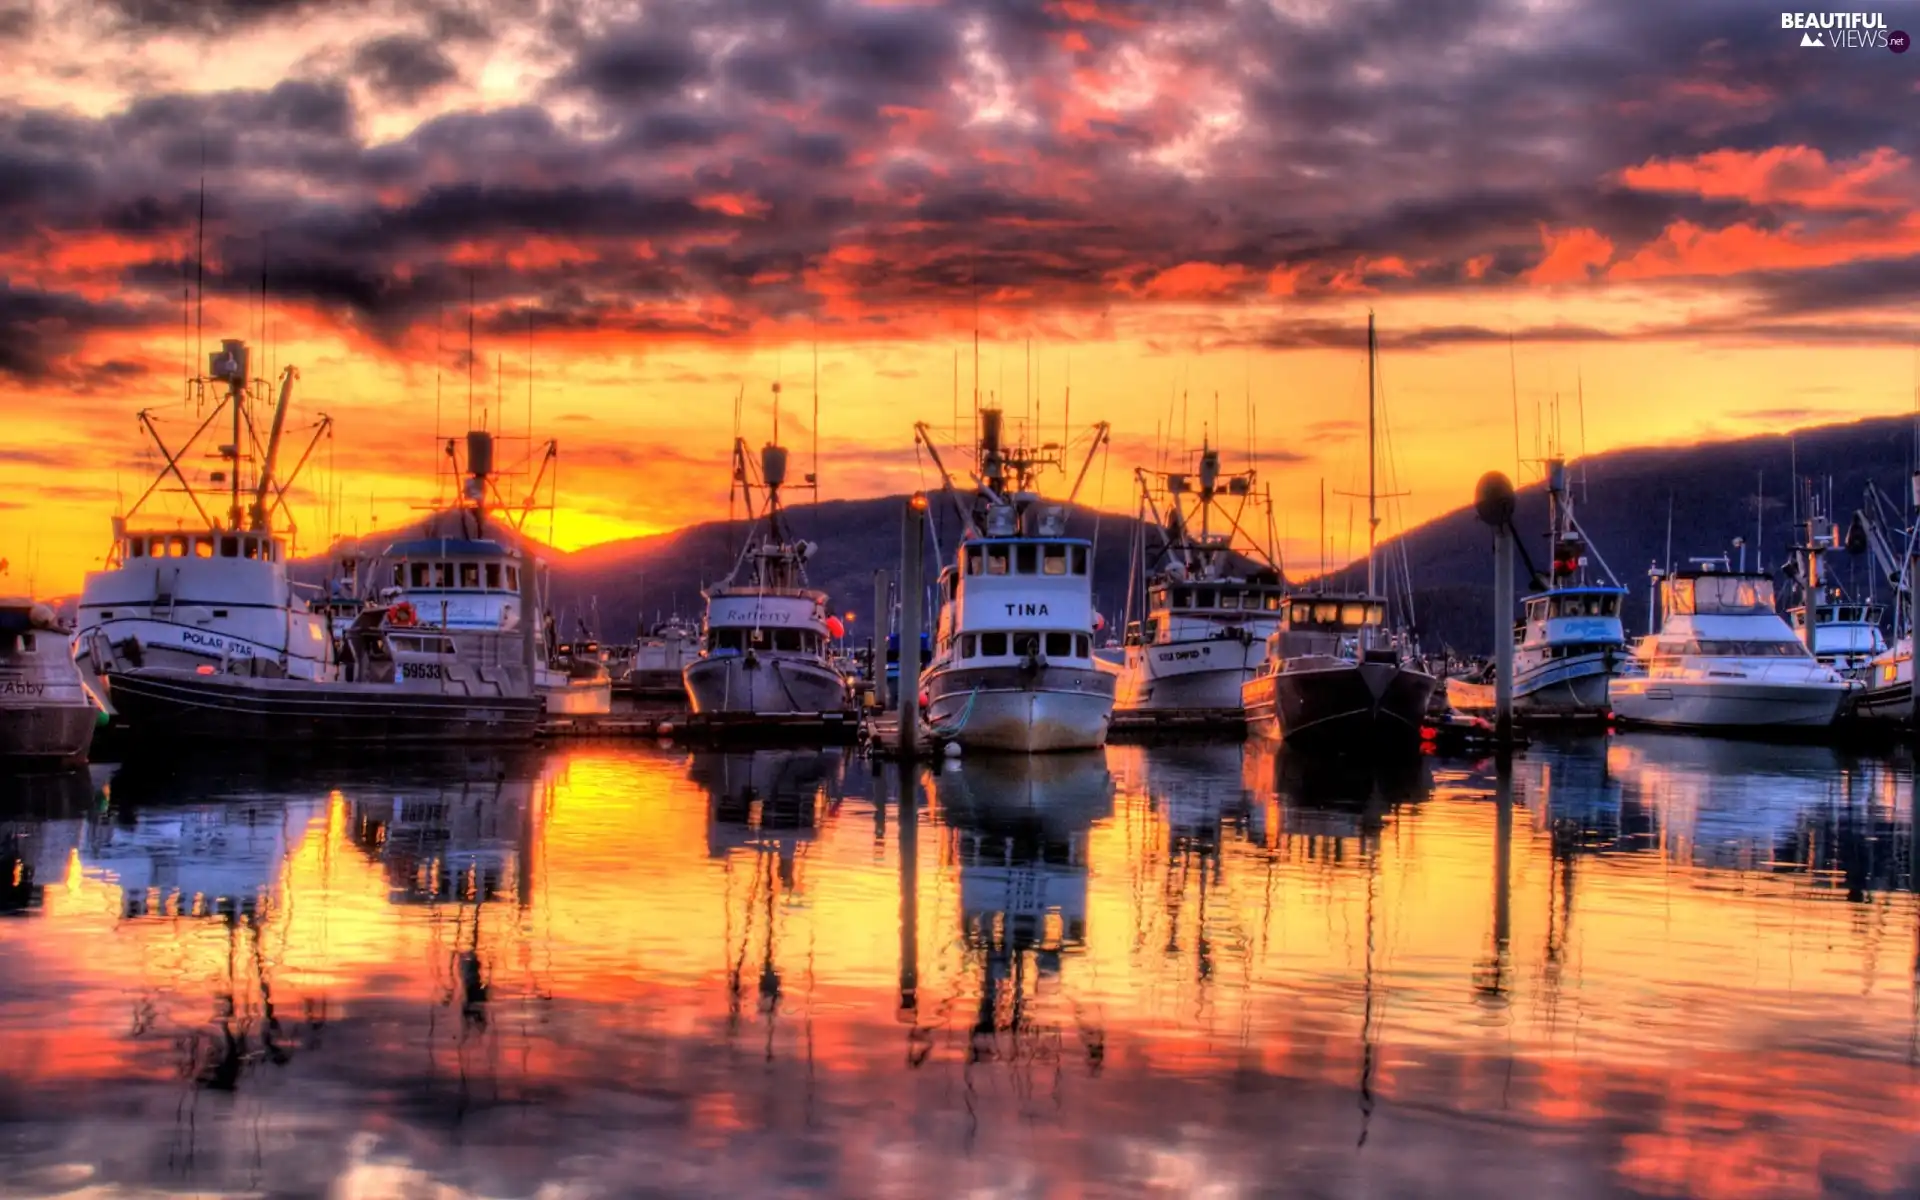 The setting, sun, port, Marina, vessels